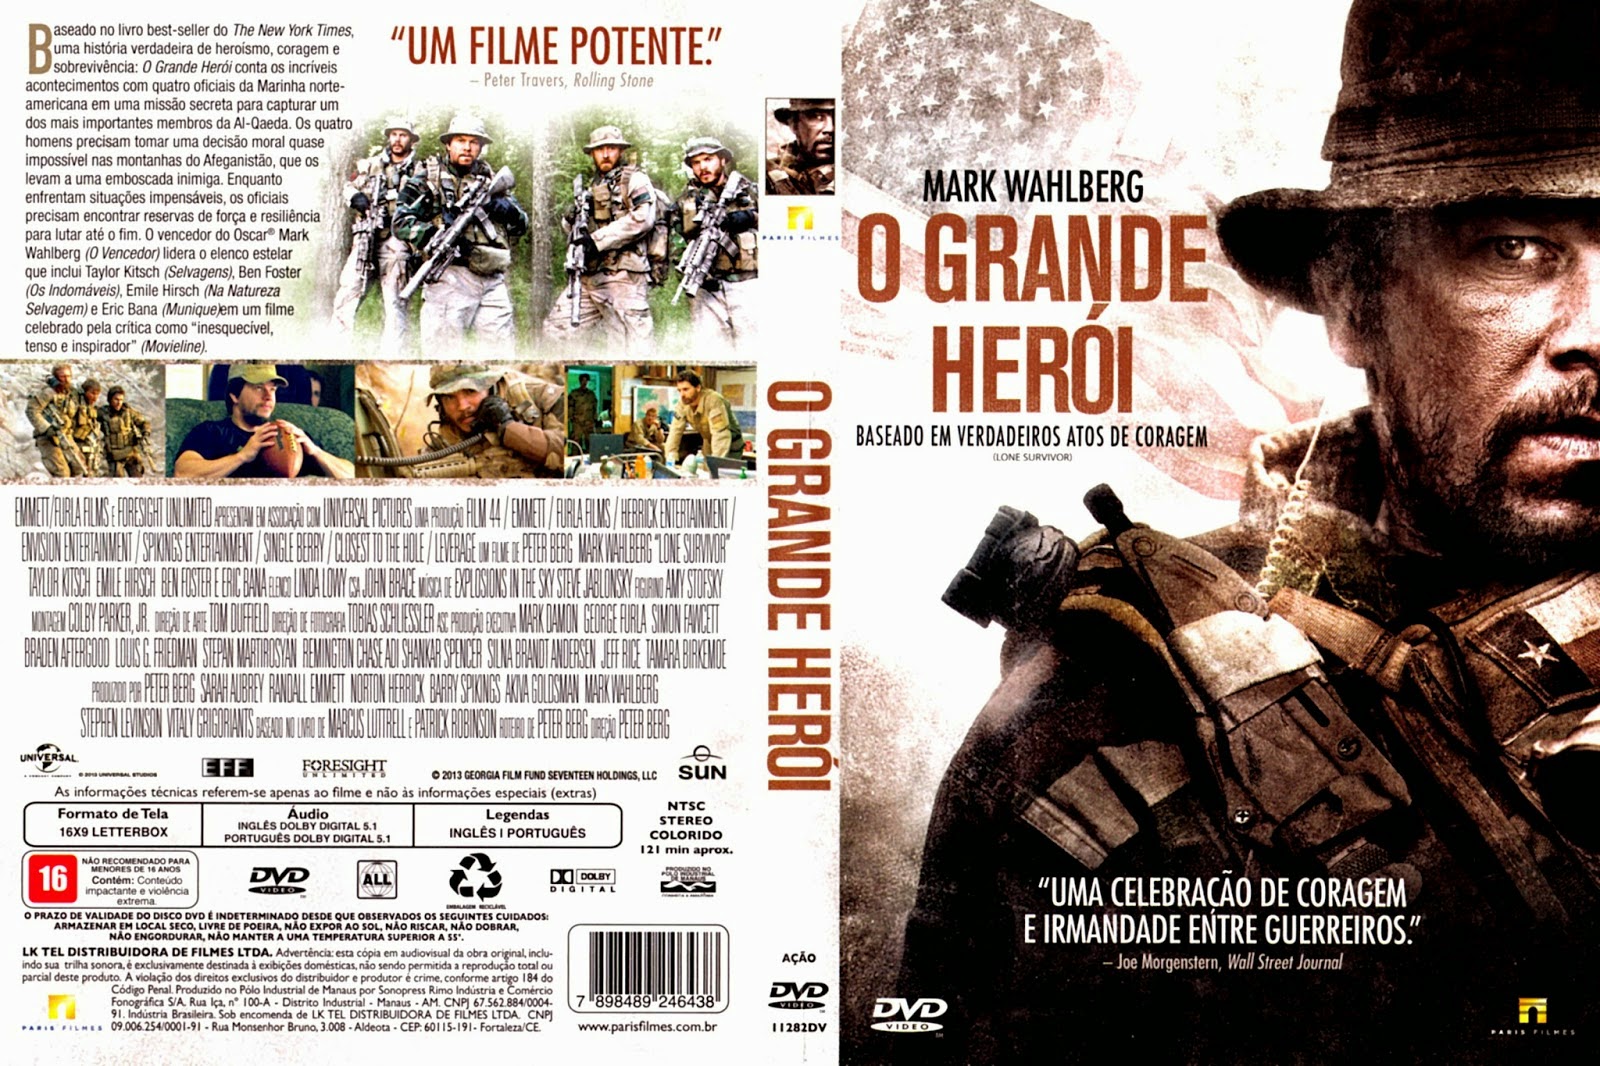 O Grande Herói filme - Trailer, sinopse e horários - Guia da Semana